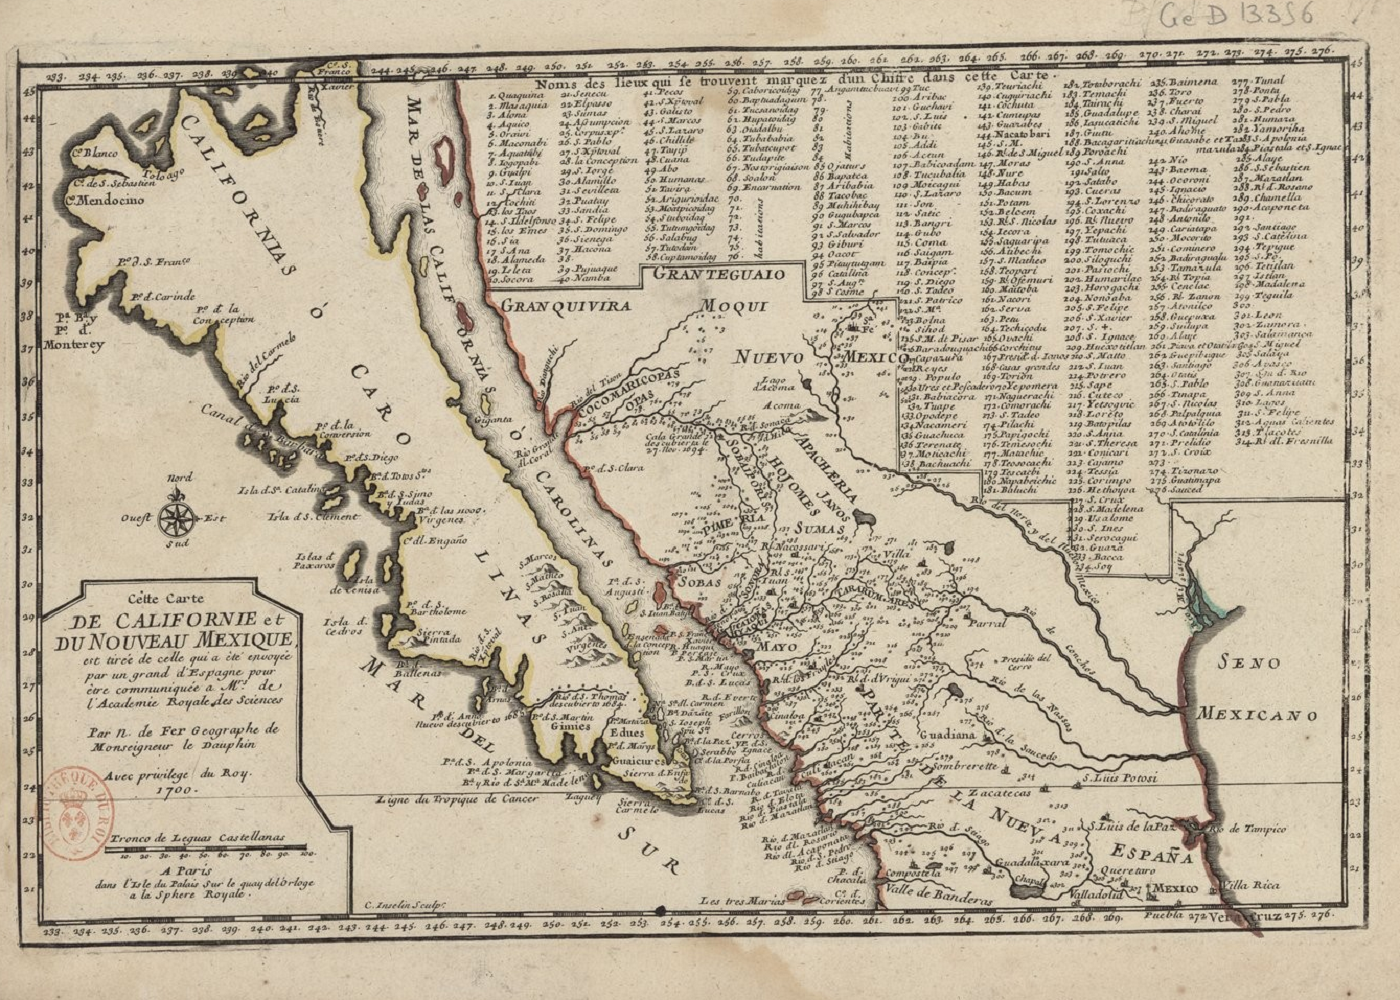 Los catalanes de Portolà, los primeros europeos que exploran la bahía de San Francisco de California